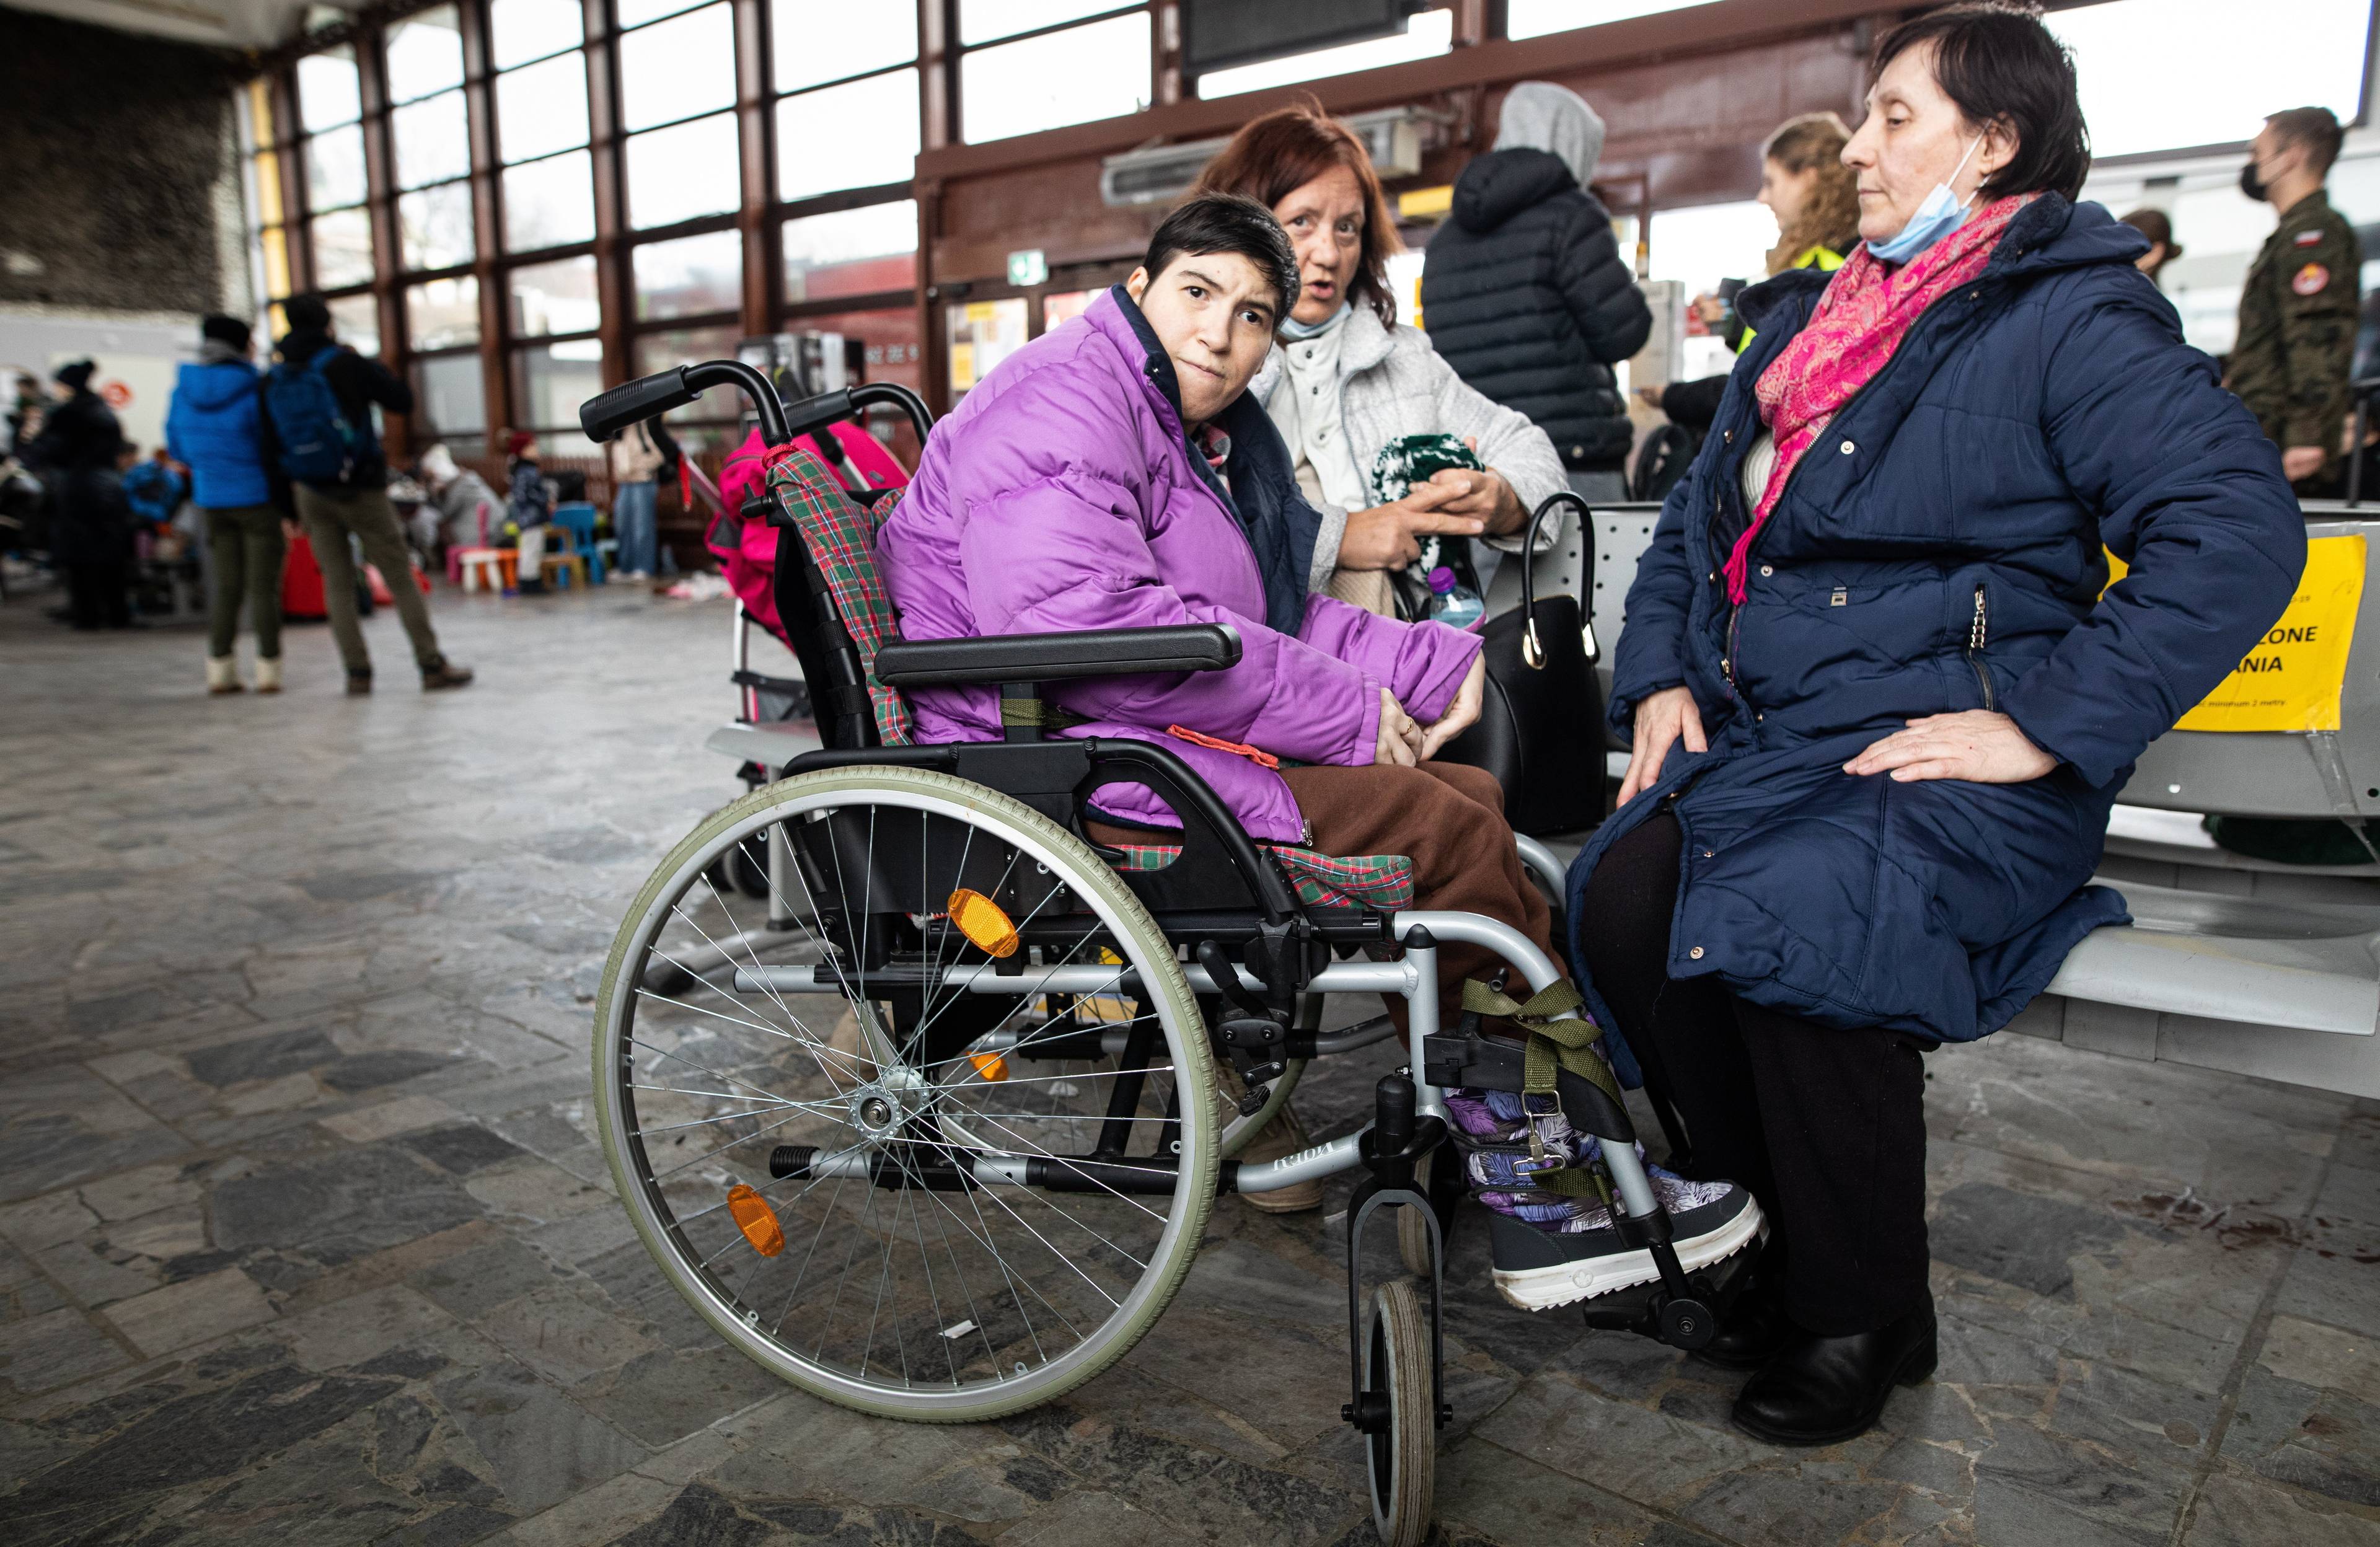 Na zdjęciu jest trzy kobiety. Jedna z nich siedzi w wózku inwalidzkim. Jest ubrana w kurtkę fioletową.